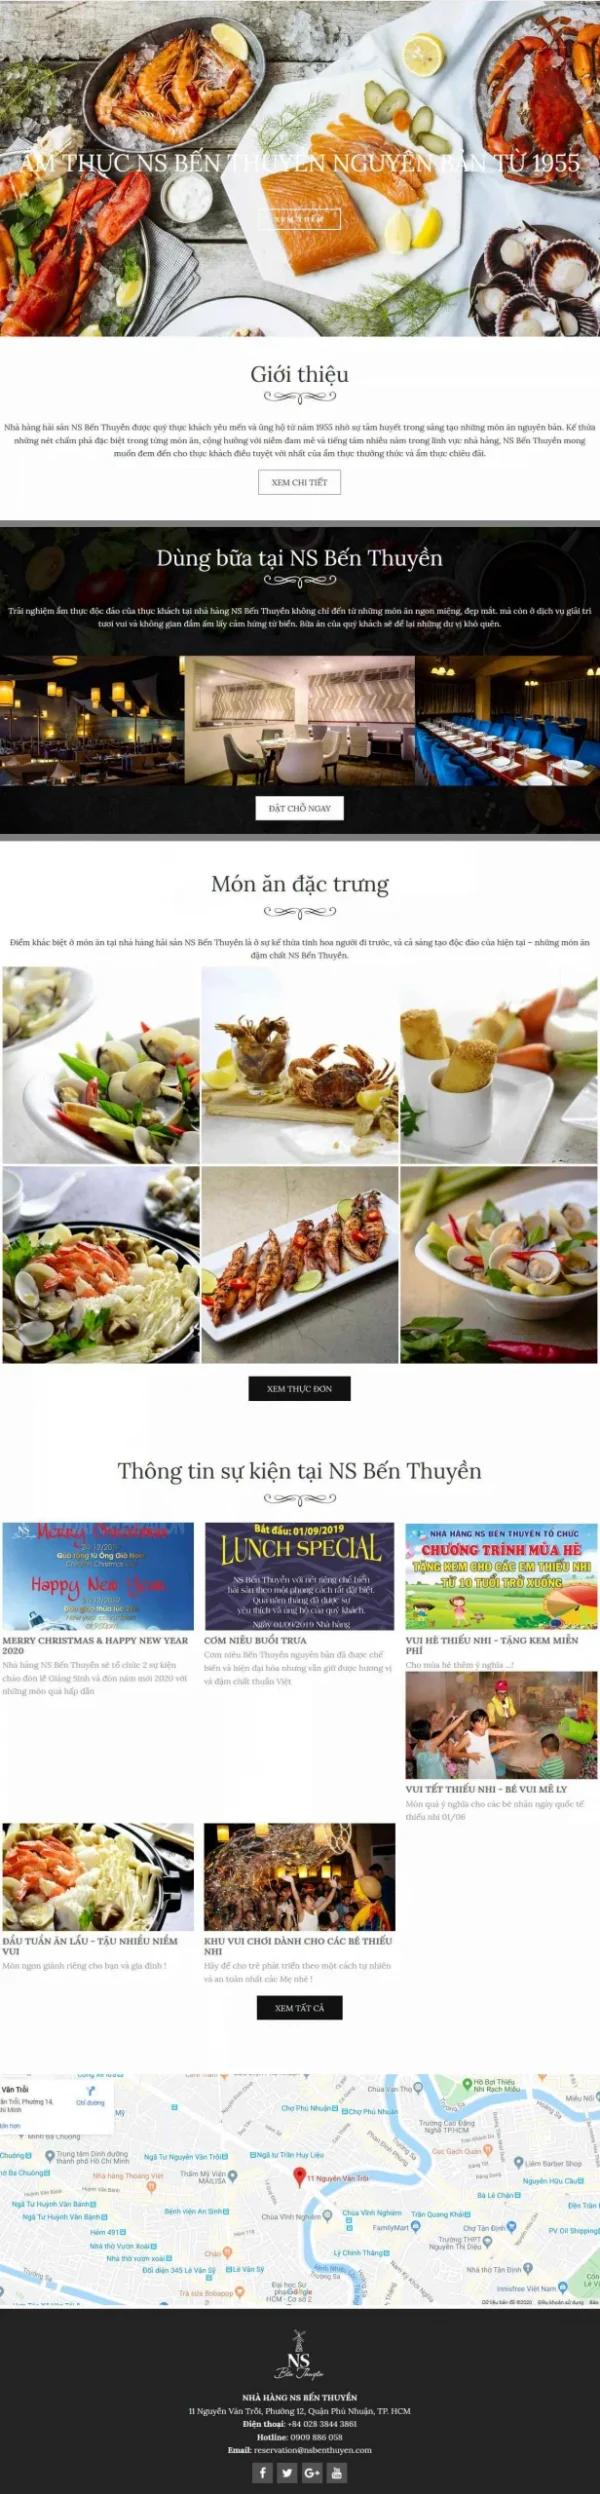 Mẫu giao diện website nhà hàng ẩm thực NS Bến Thuyền